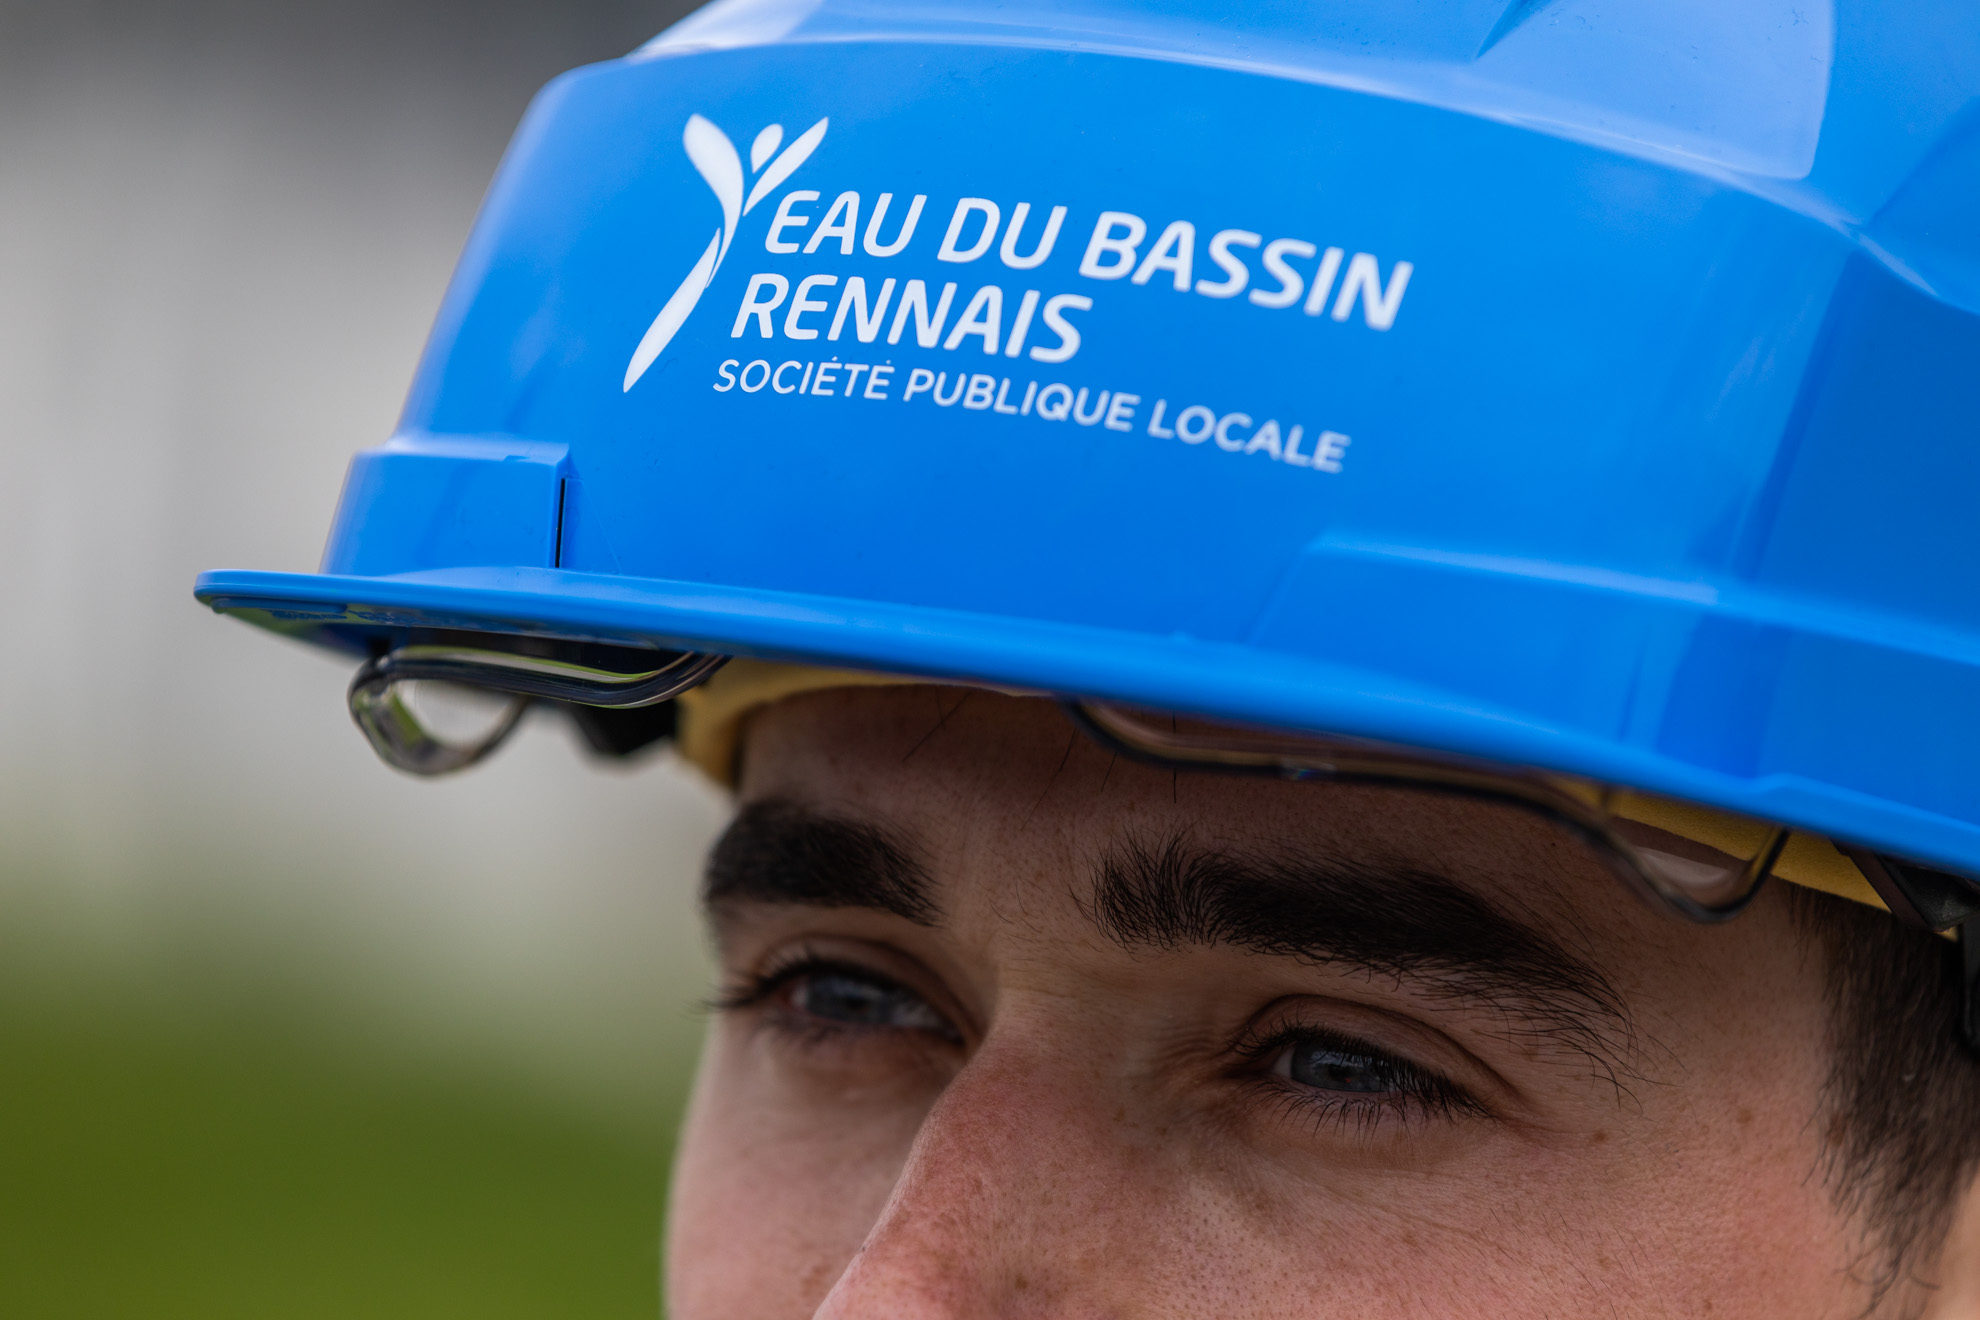 Recrutement: Assistant(e) Ressources Humaines [Ref. 2022/05/DRH-ASRH] F/H chez SPL EAU DU BASSIN RENNAIS à Rennes